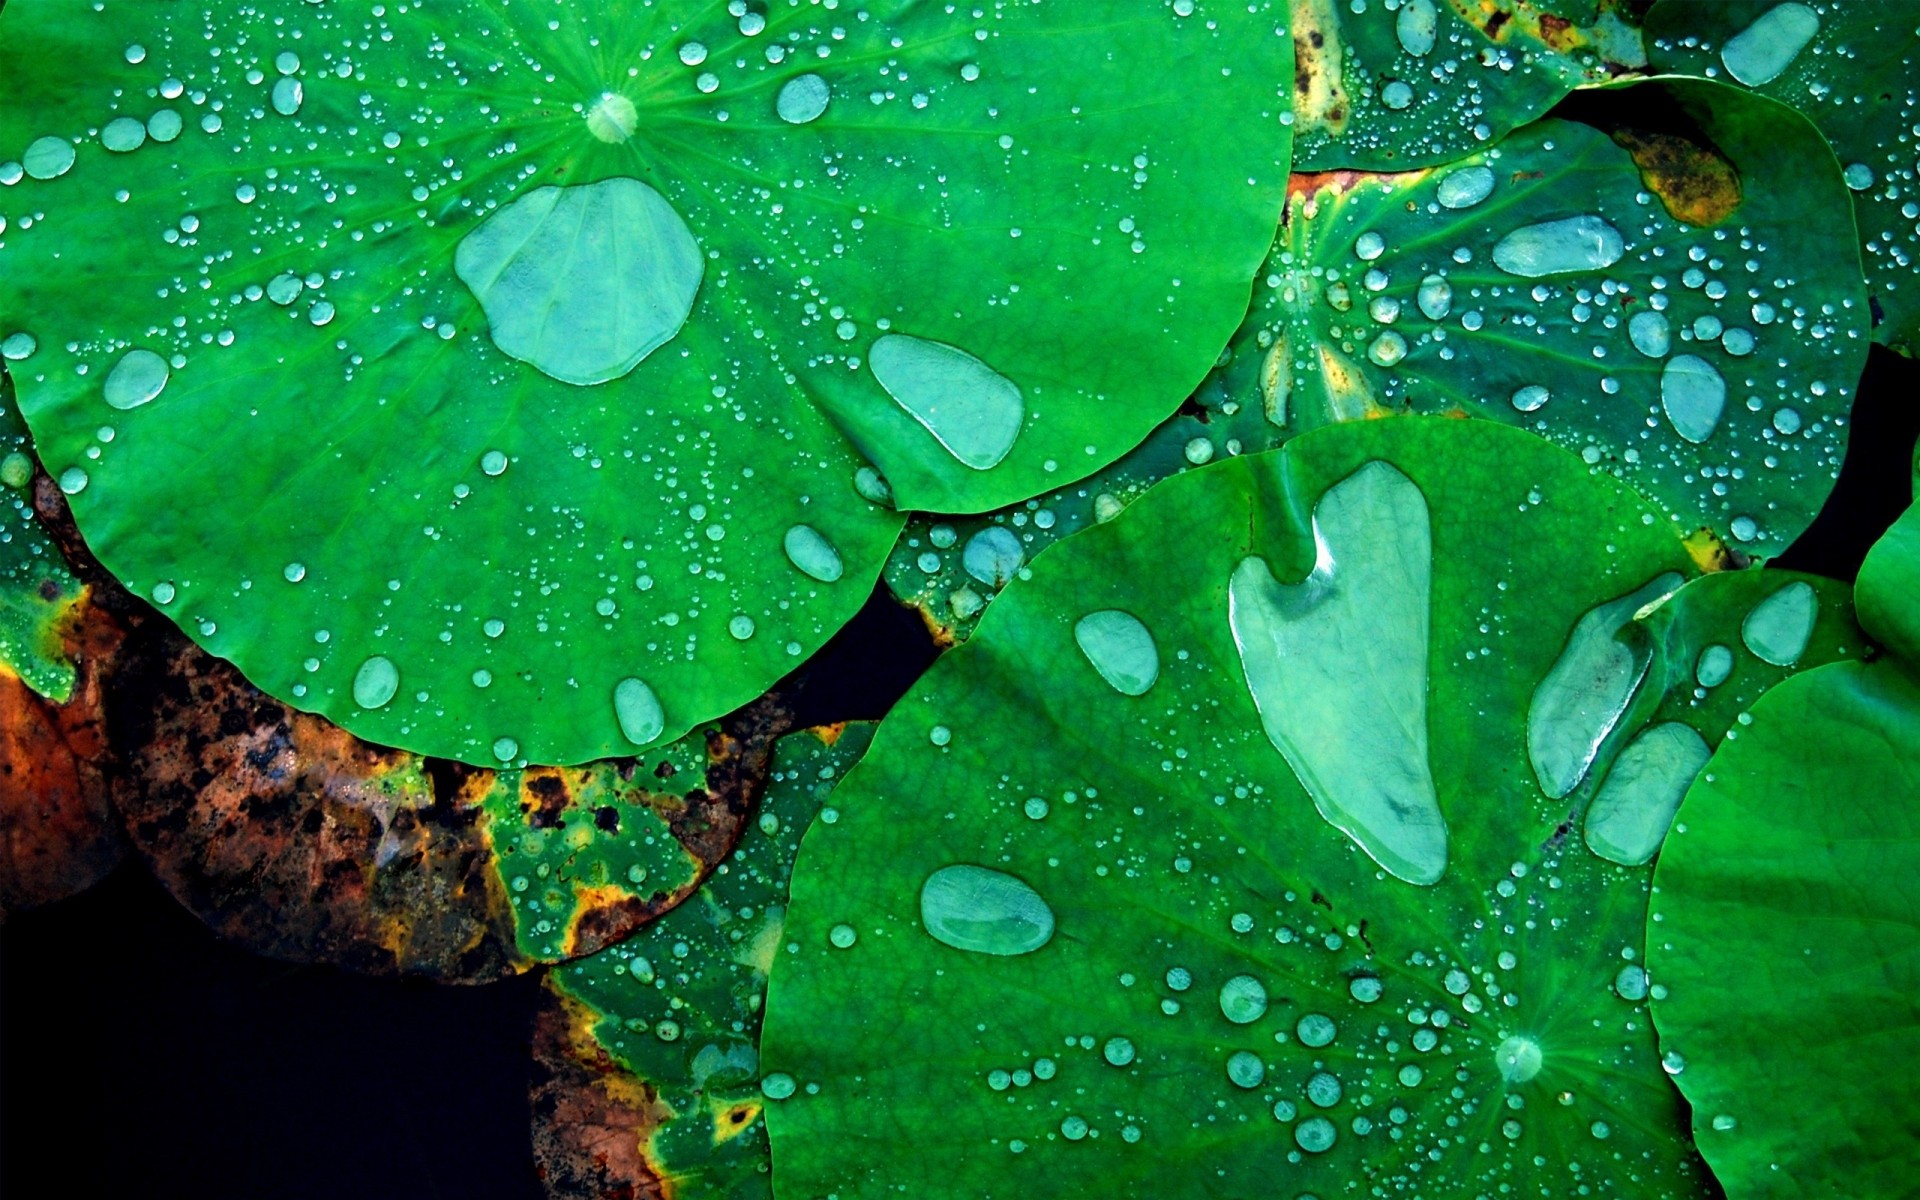 растения лист падение дождь росы флора мокрый природа сад воды рабочего стола аннотация капли цветок цвет лето среды текстура яркий